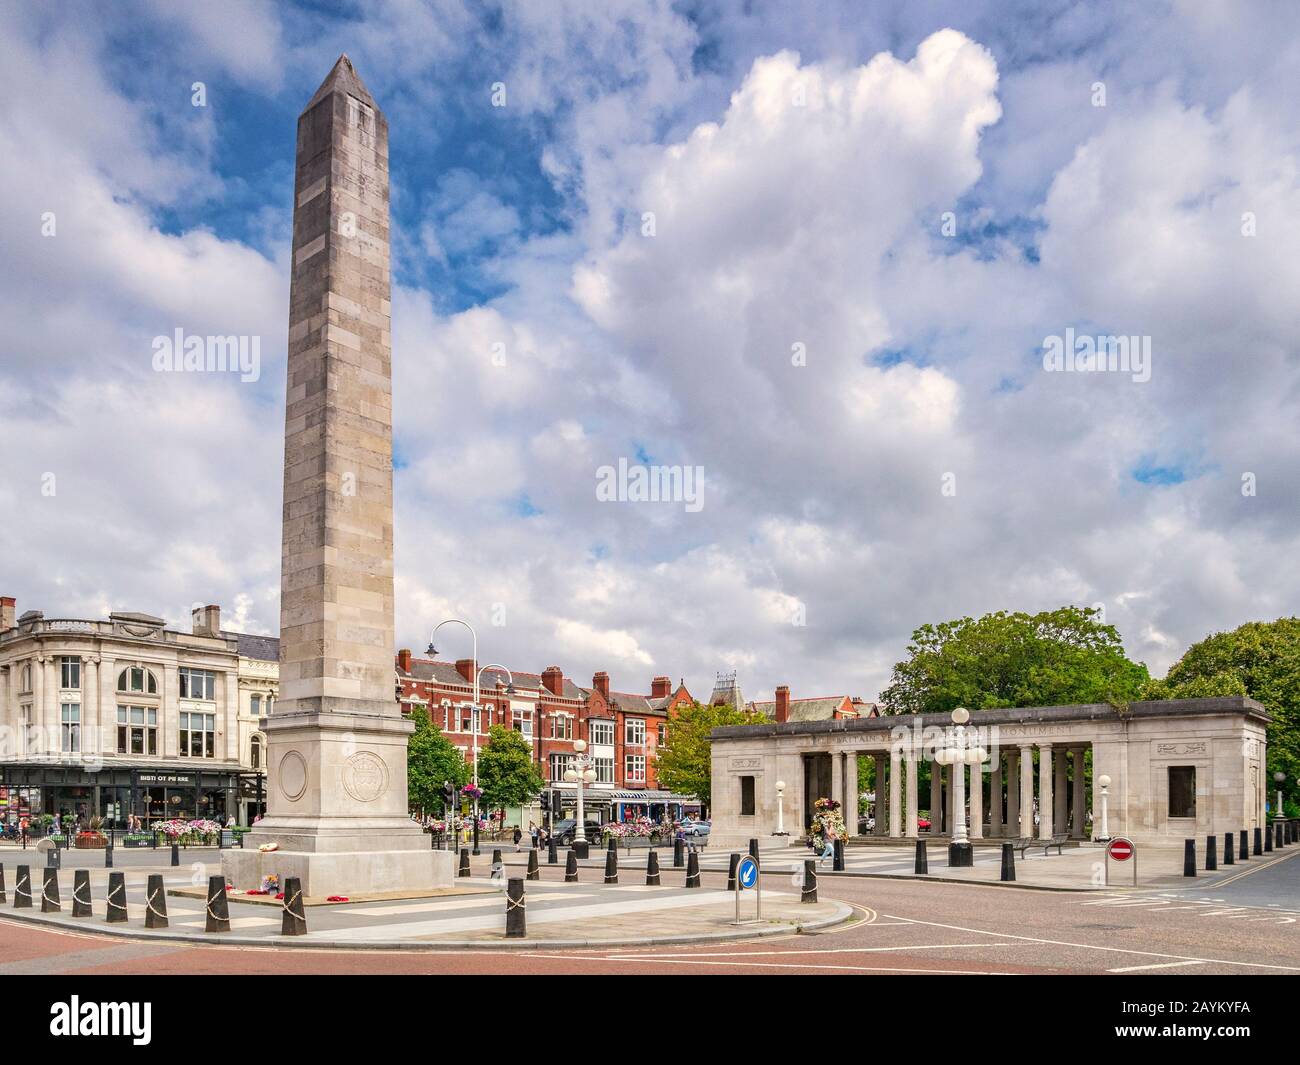 14. Juli 2019: Southport, Merseyside - London Square, mit dem war Memorial, und Lord Street, der Haupteinkaufsstraße der Stadt. Stockfoto